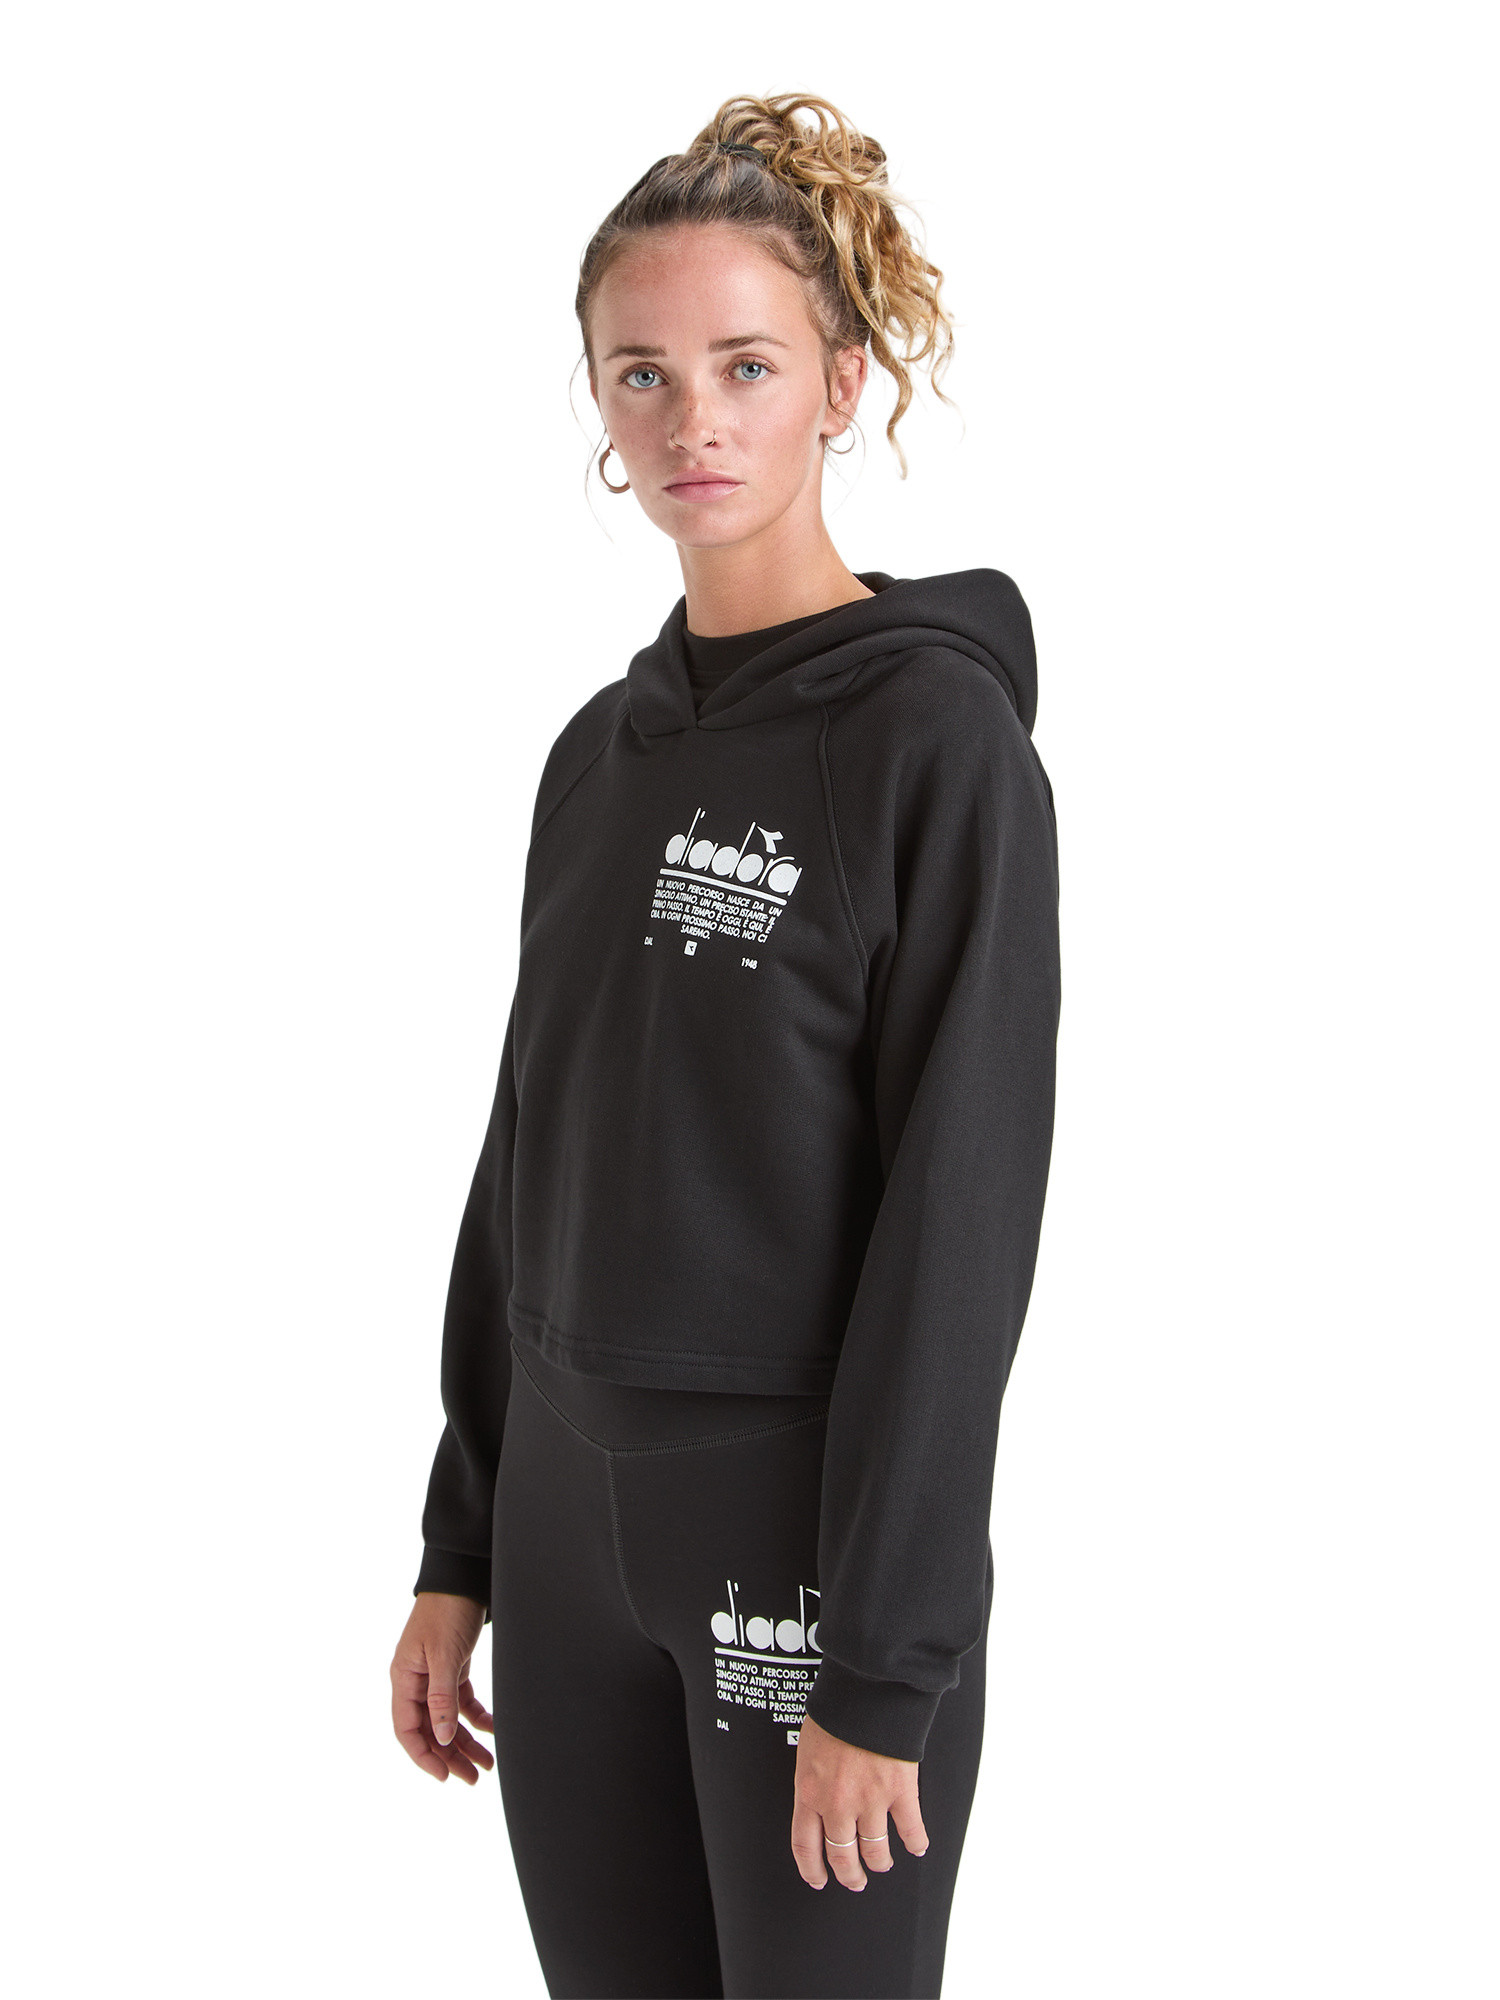 Diadora - Manifesto cotton hoodie, Black, large image number 2